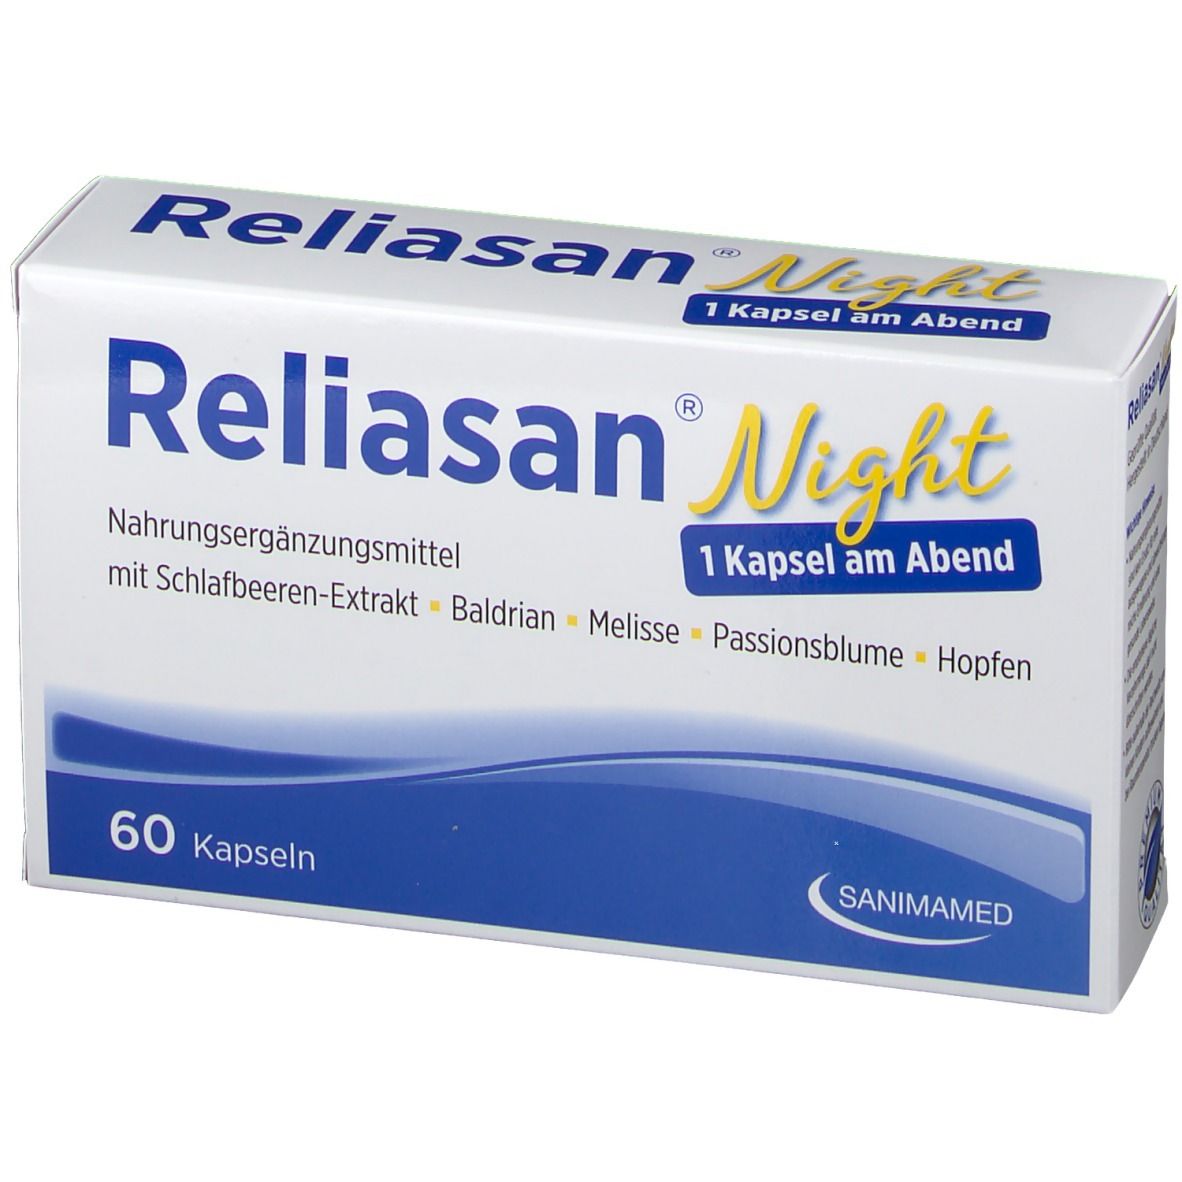 Reliasan® Night